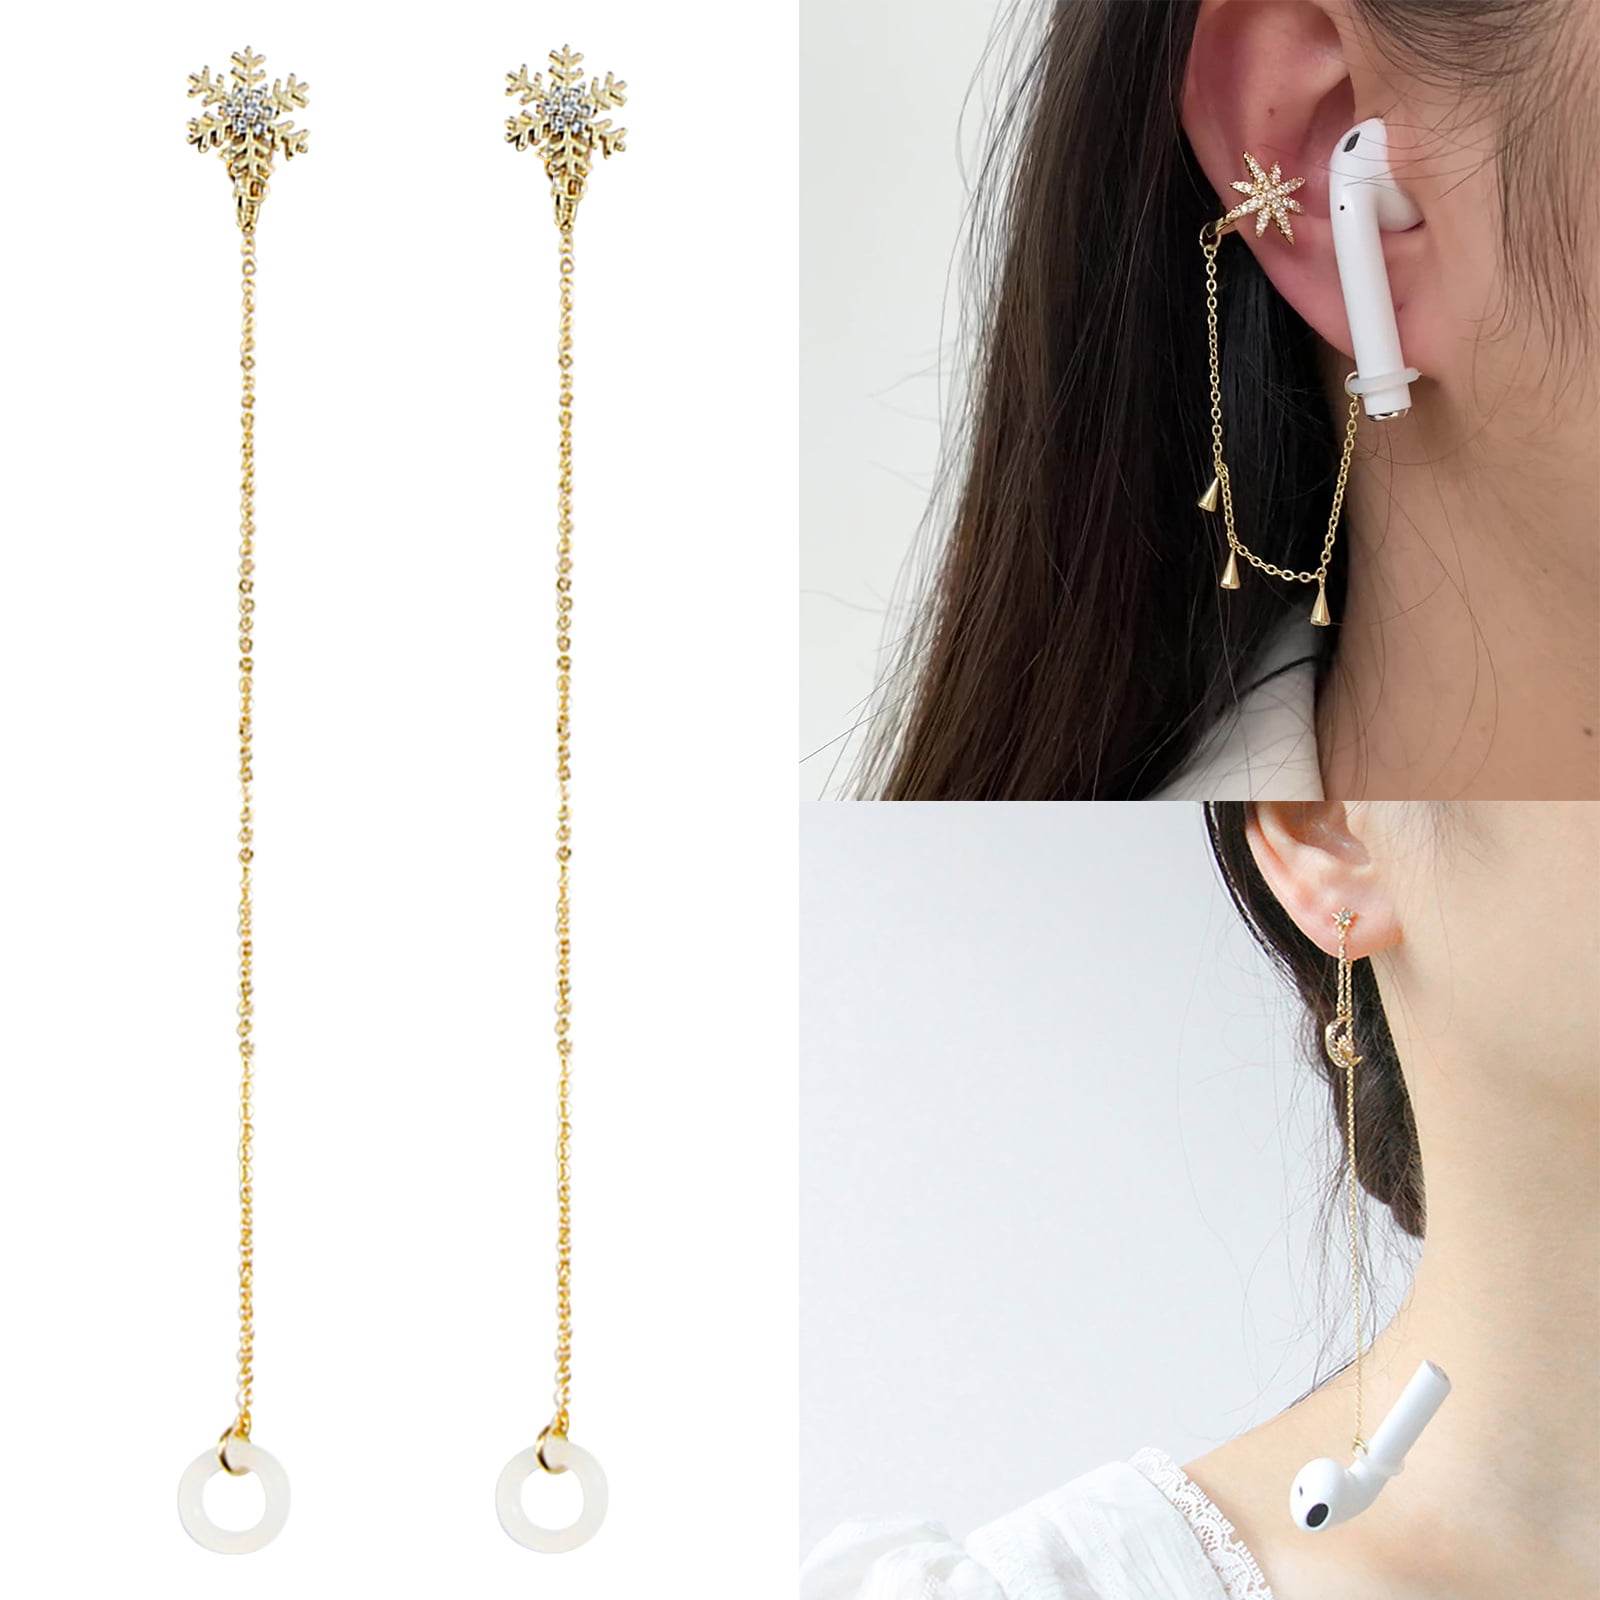 Stylish Gold Earrings Design for Girls | Daily wear Earrings